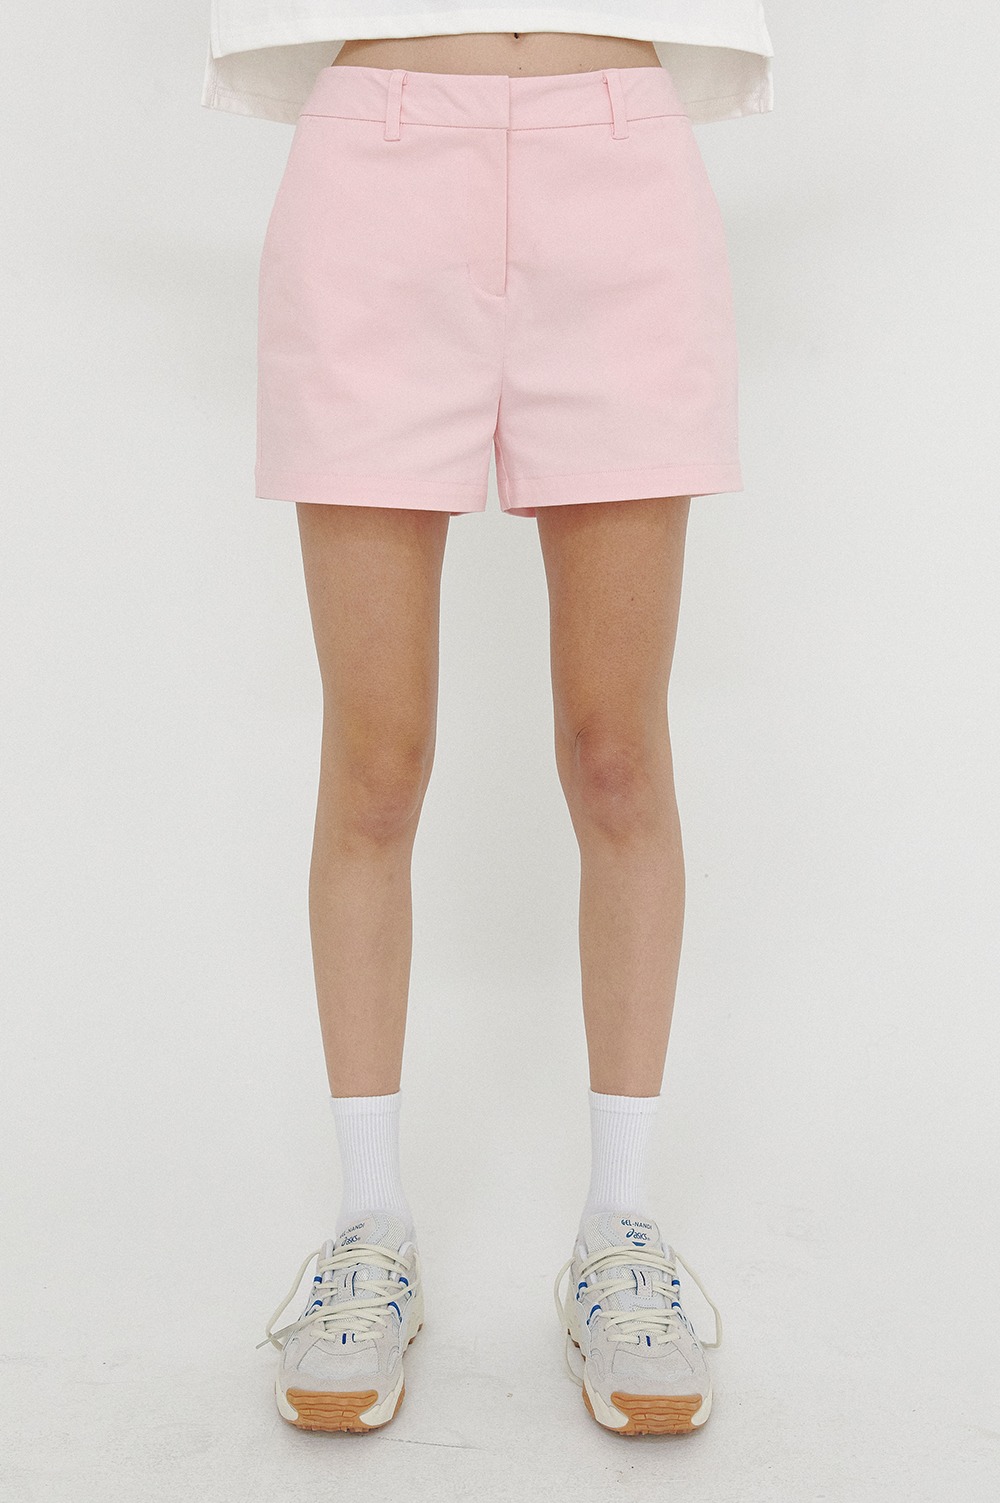 clove - [SS21 clove] Club Cotton Shorts Pink